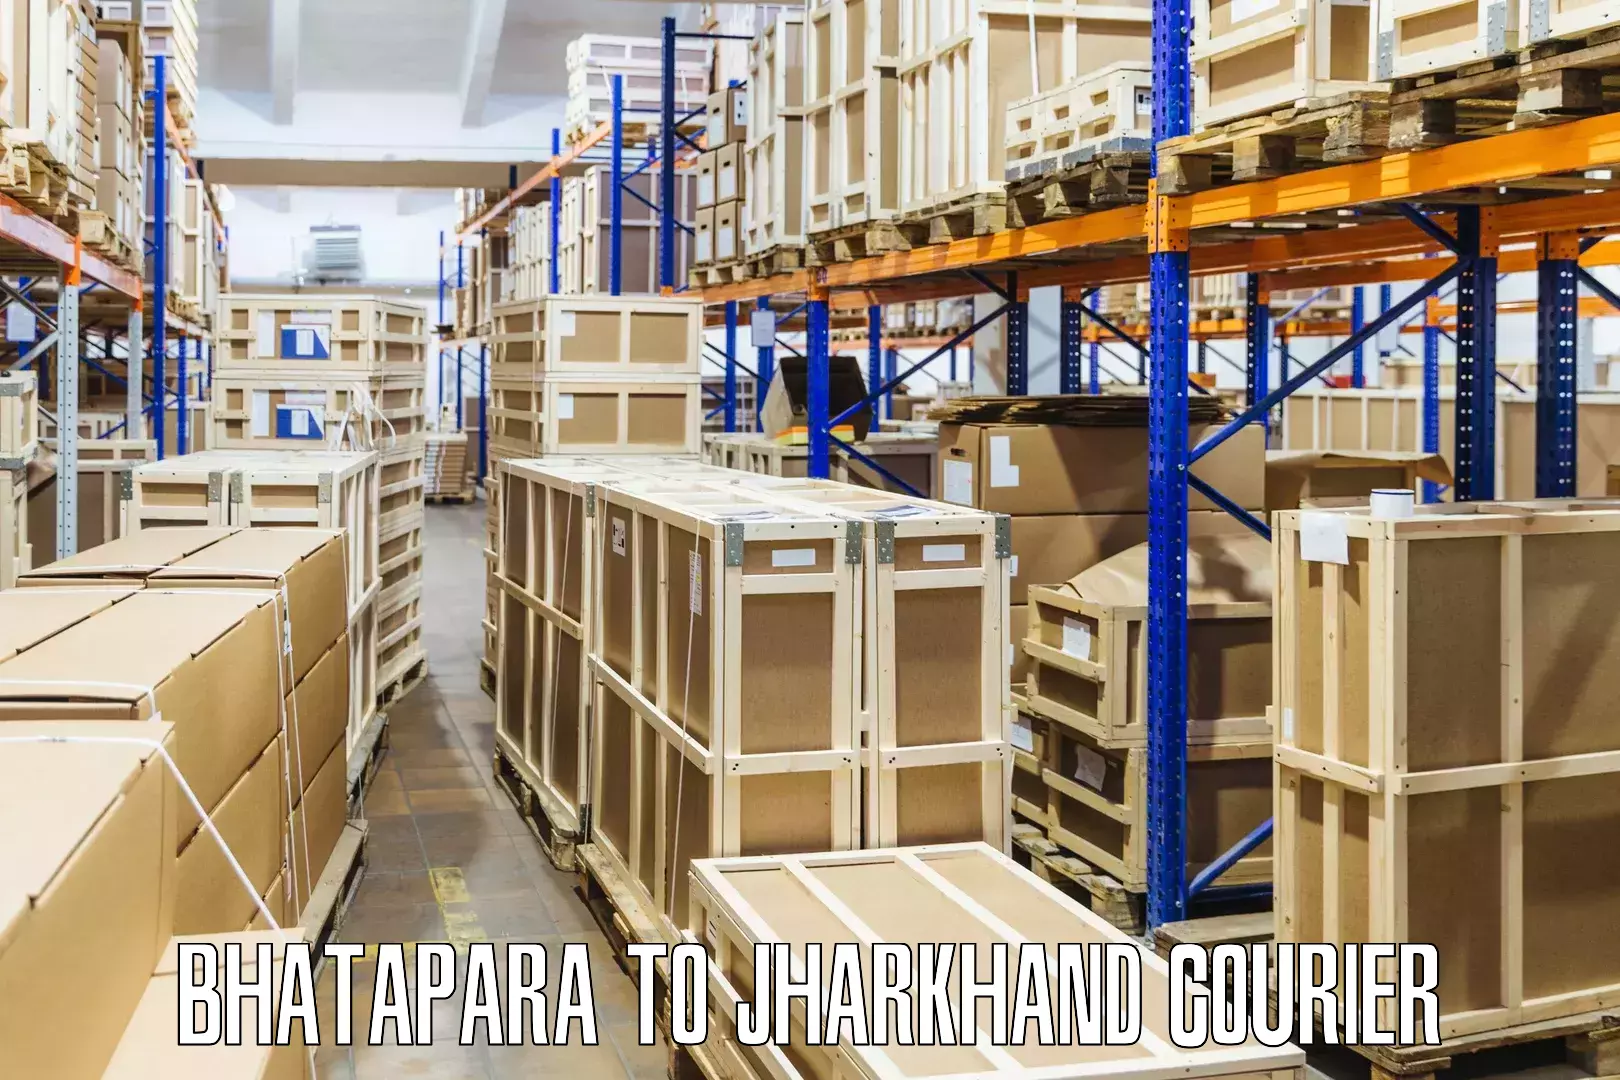 Bulk logistics Bhatapara to Pakur